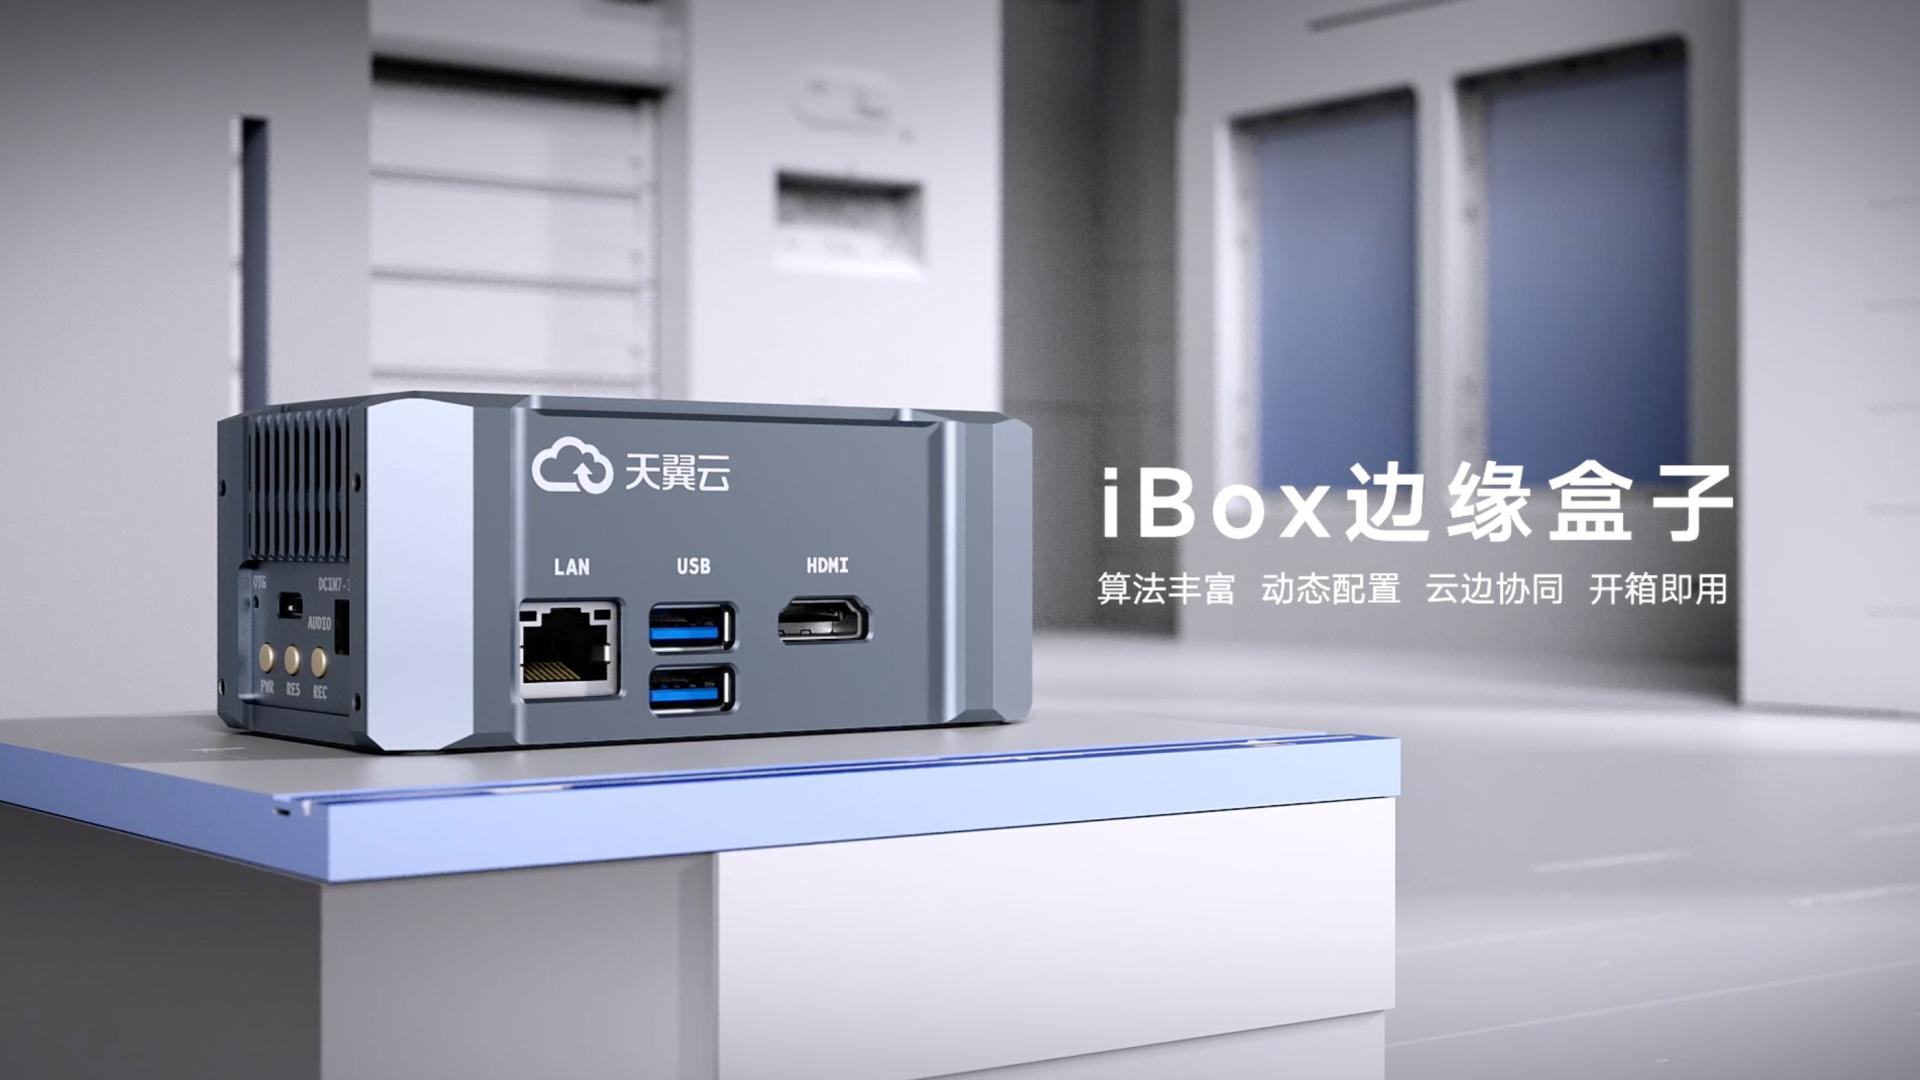 【三维】iBox边缘盒子产品动画